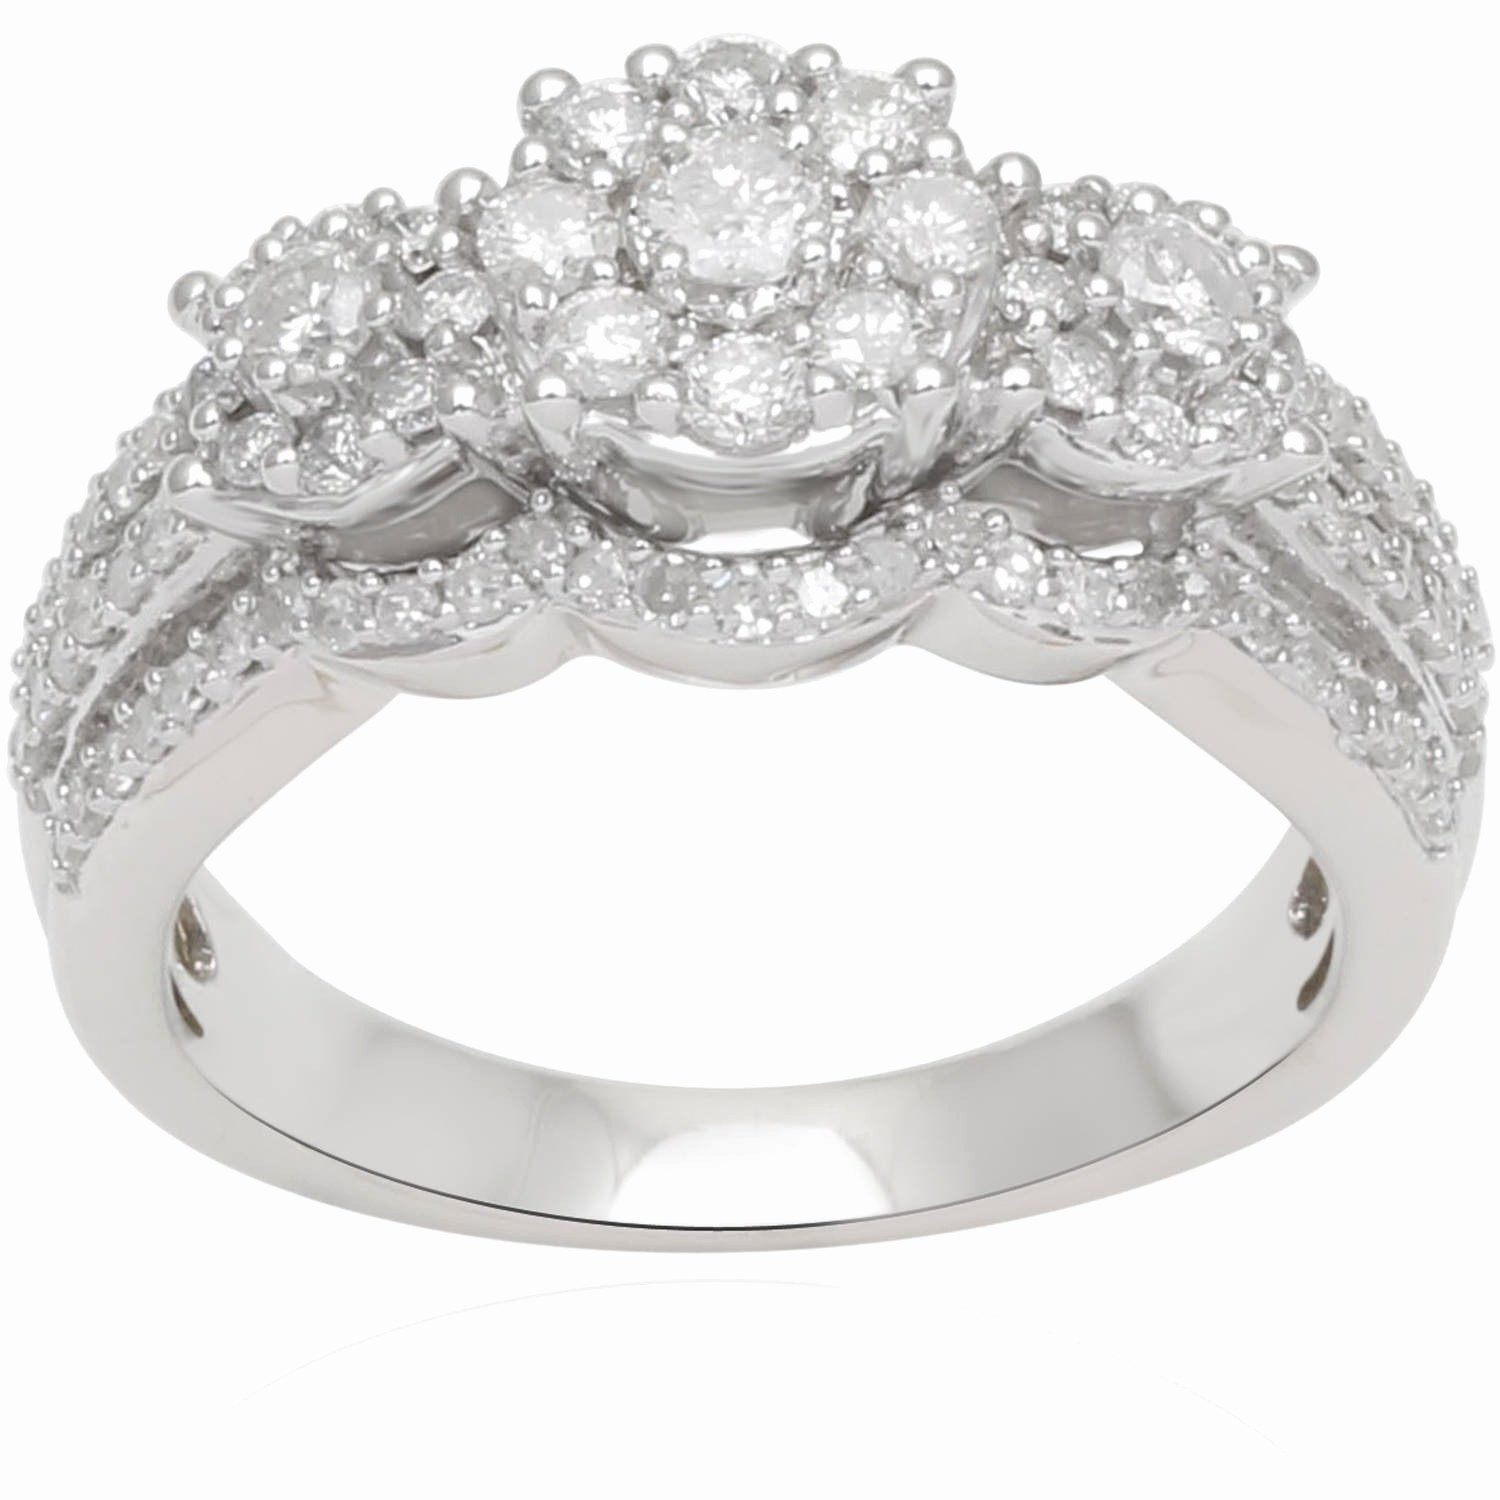 Wedding Rings Under 200
 Lovely Diamond Rings Under 200 Dollars Matvuk